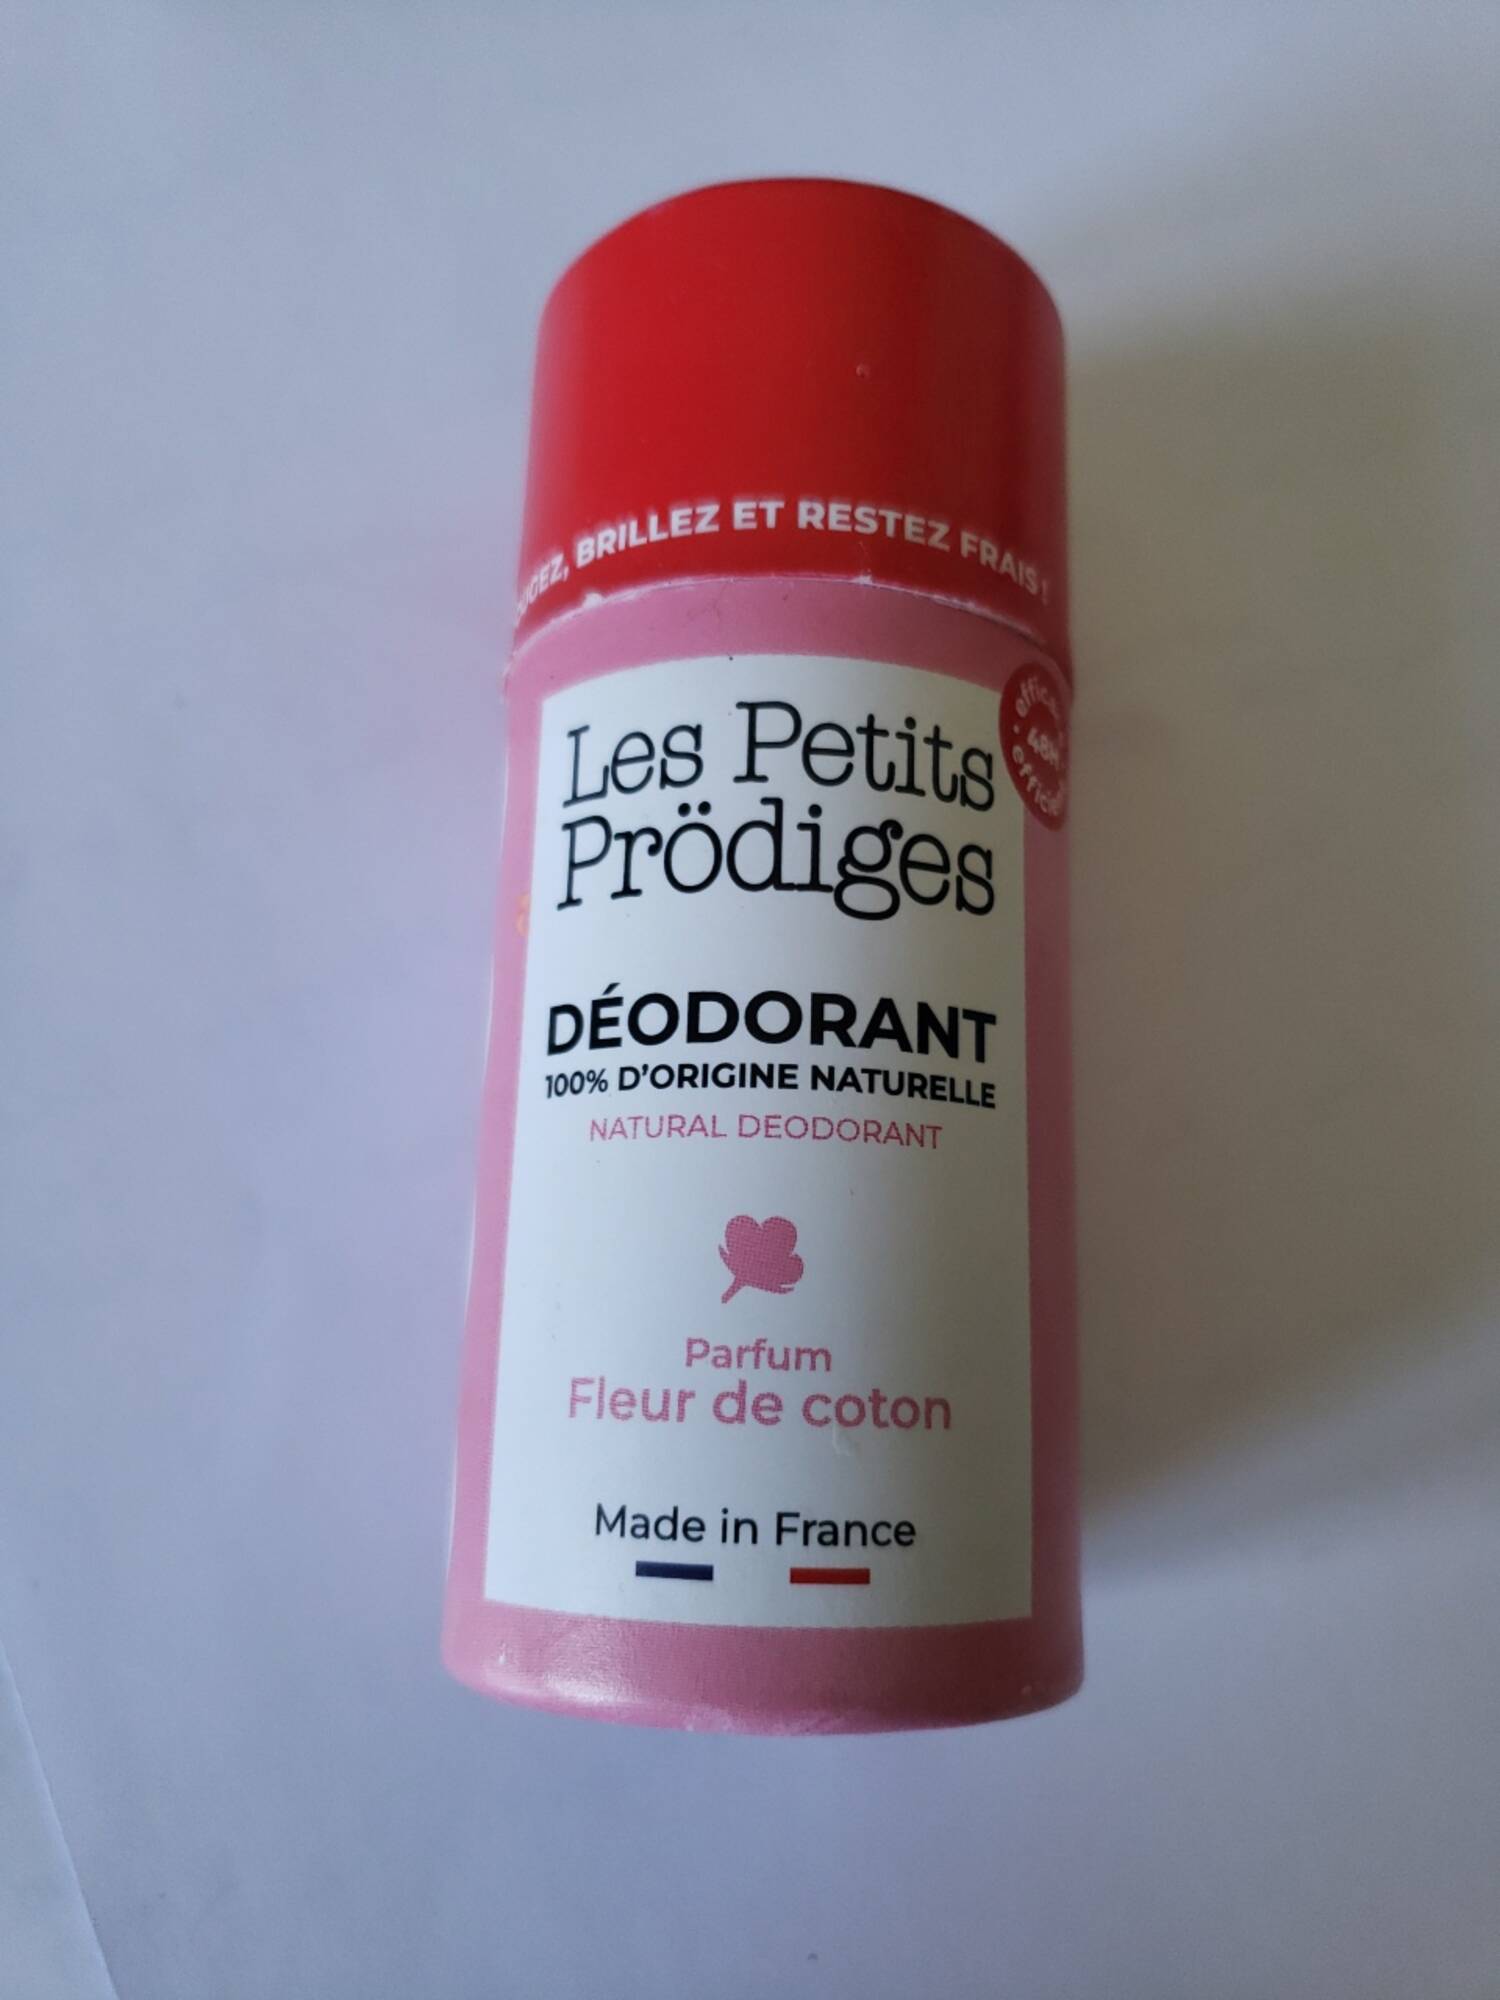 LES PETITS PRÖDIGES - Déodorant parfum fleur de coton